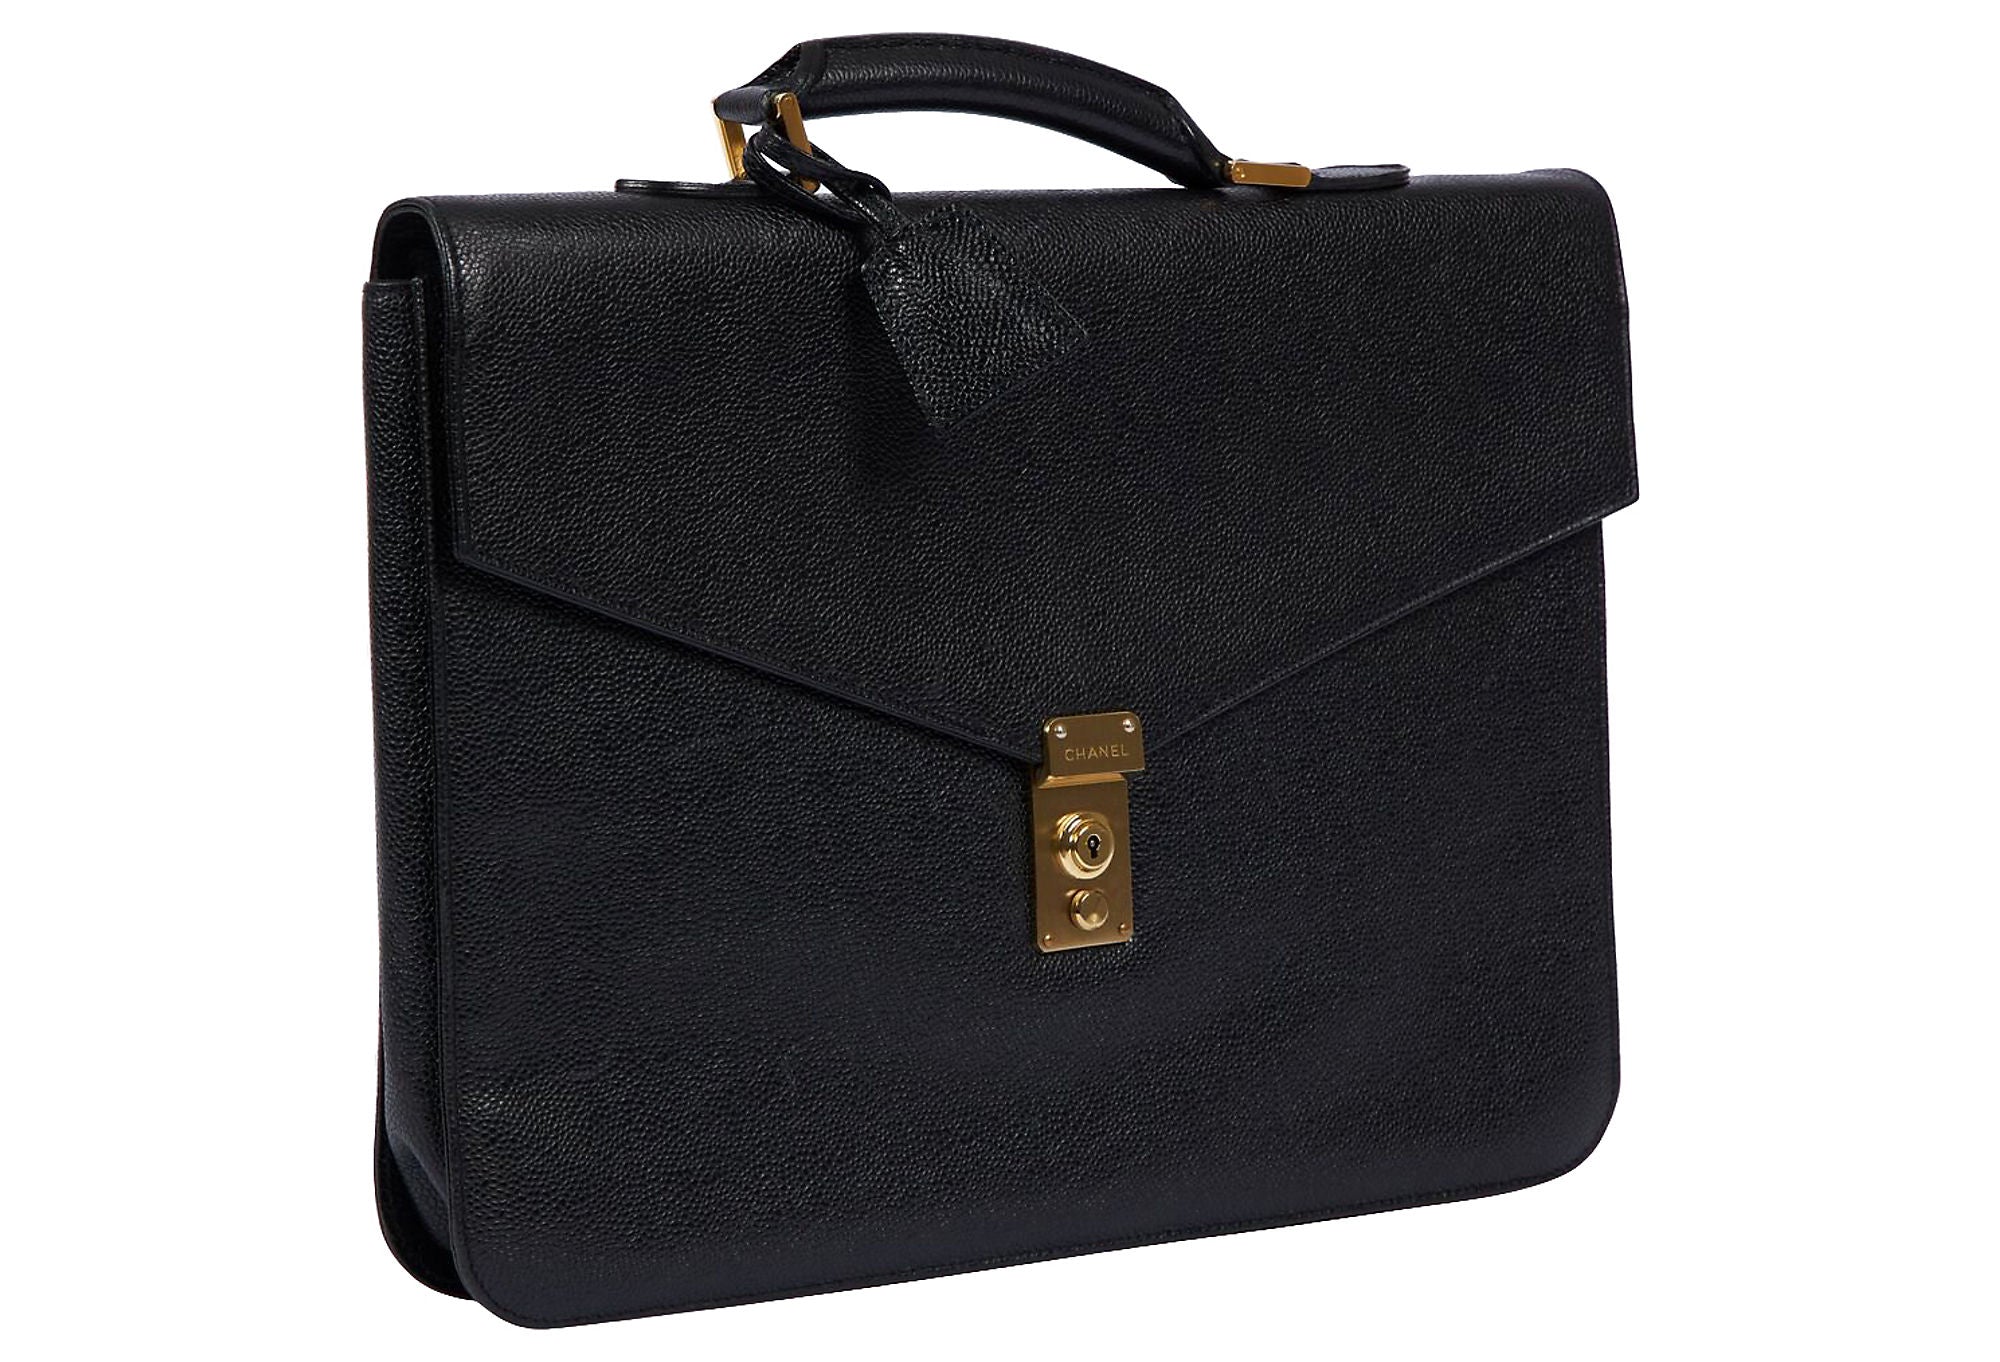 Chanel Vintage CC Briefcase - Black Handle Bags, Handbags